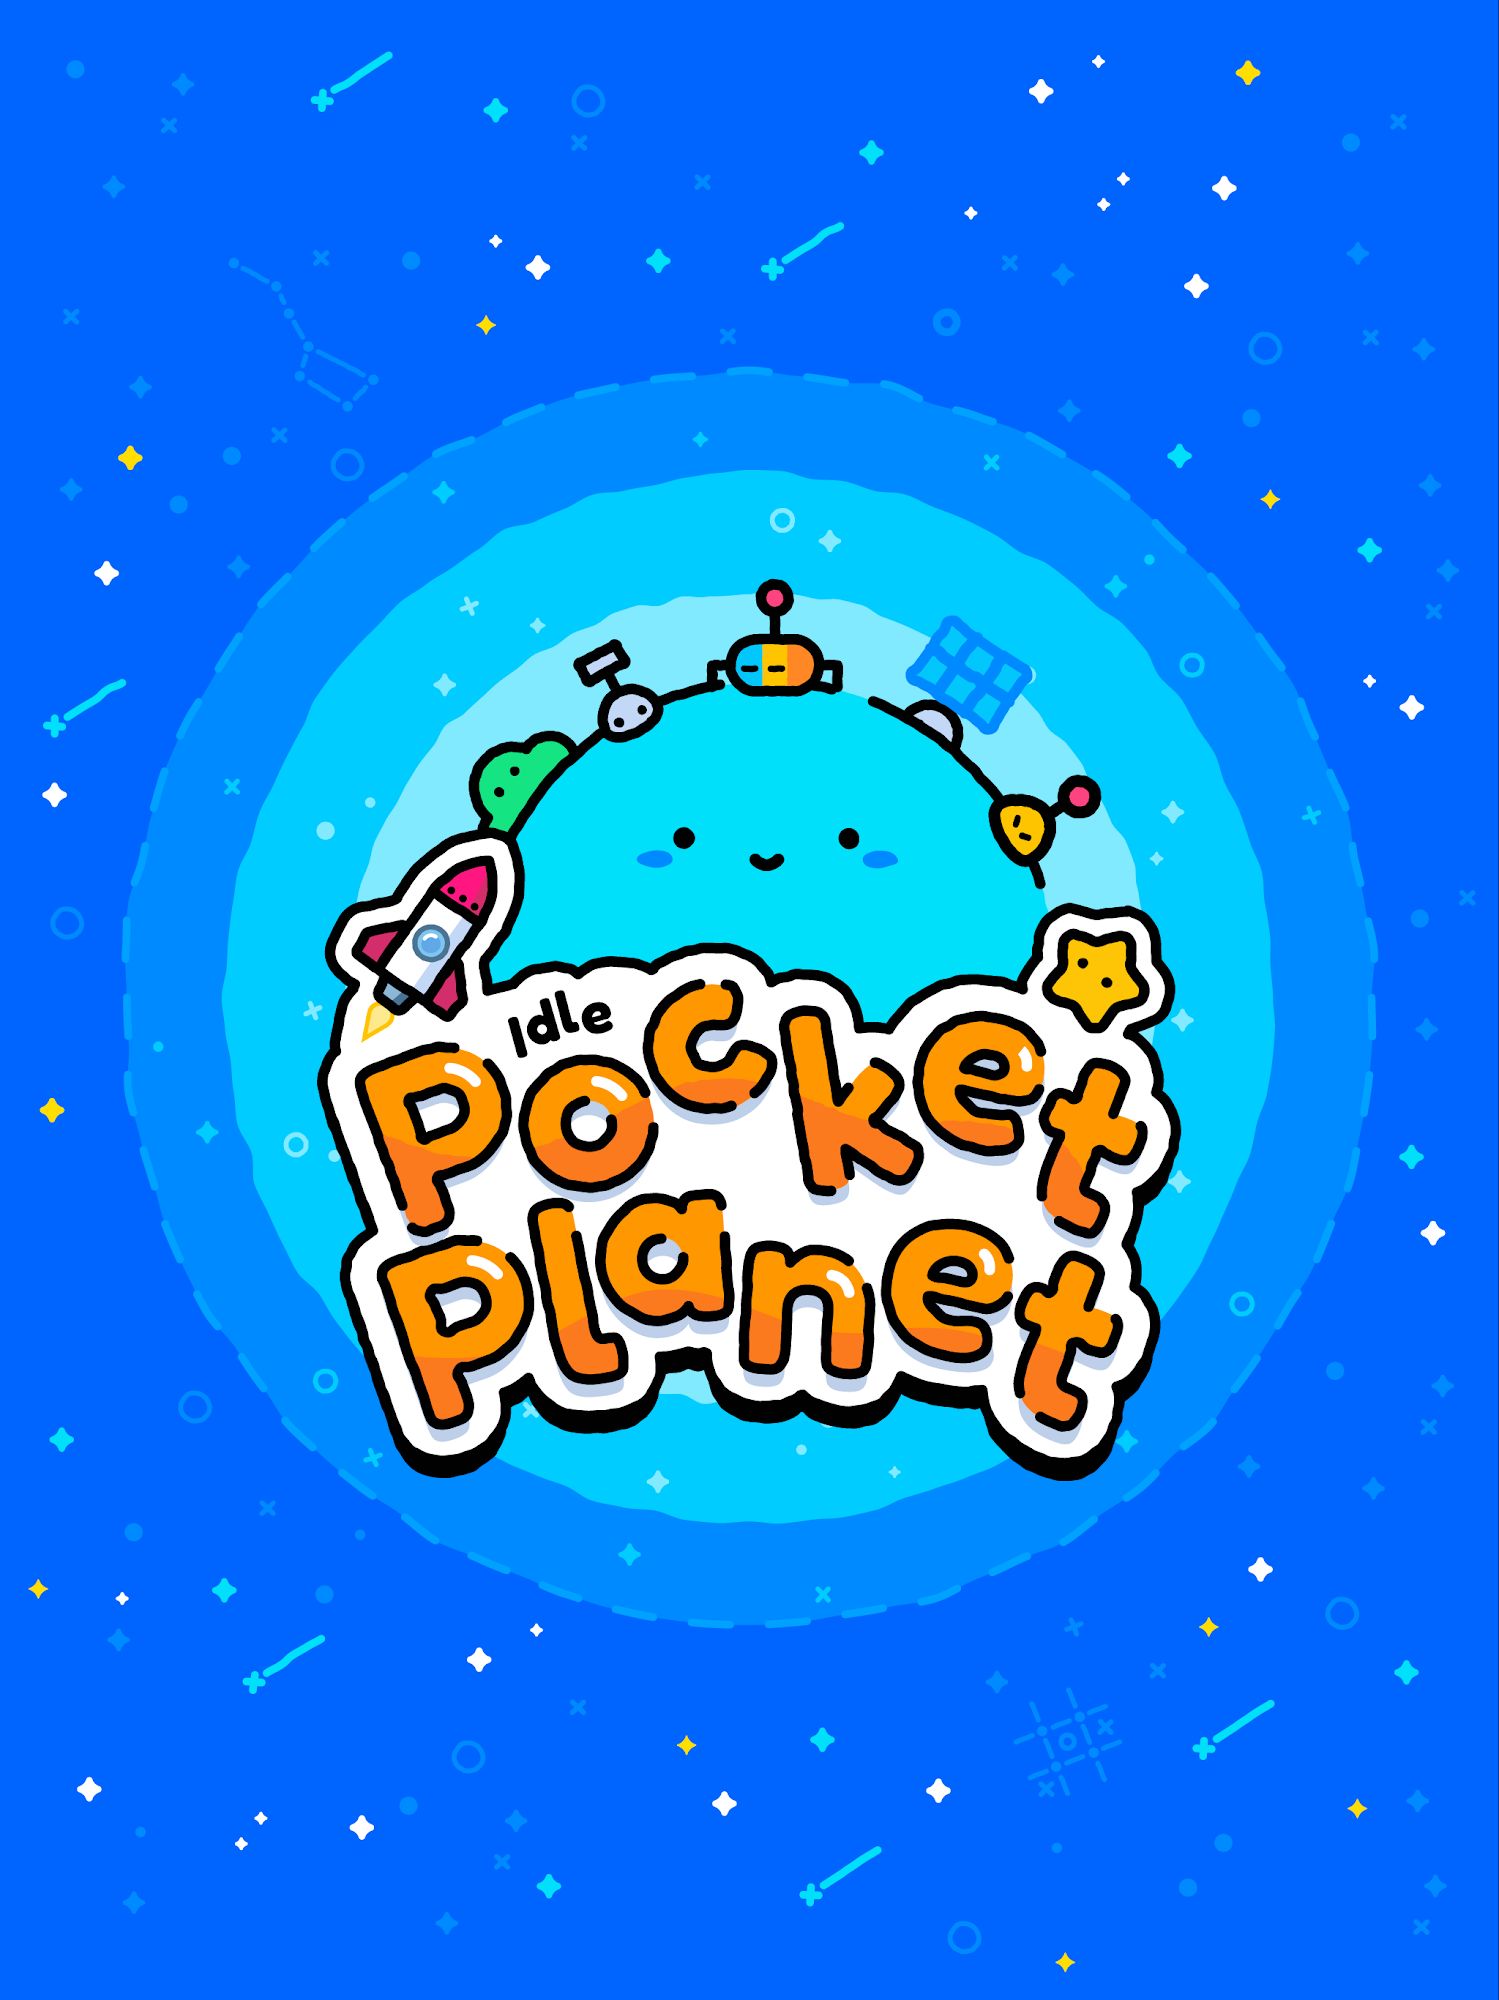 Descargar Idle Pocket Planet gratis para Android.